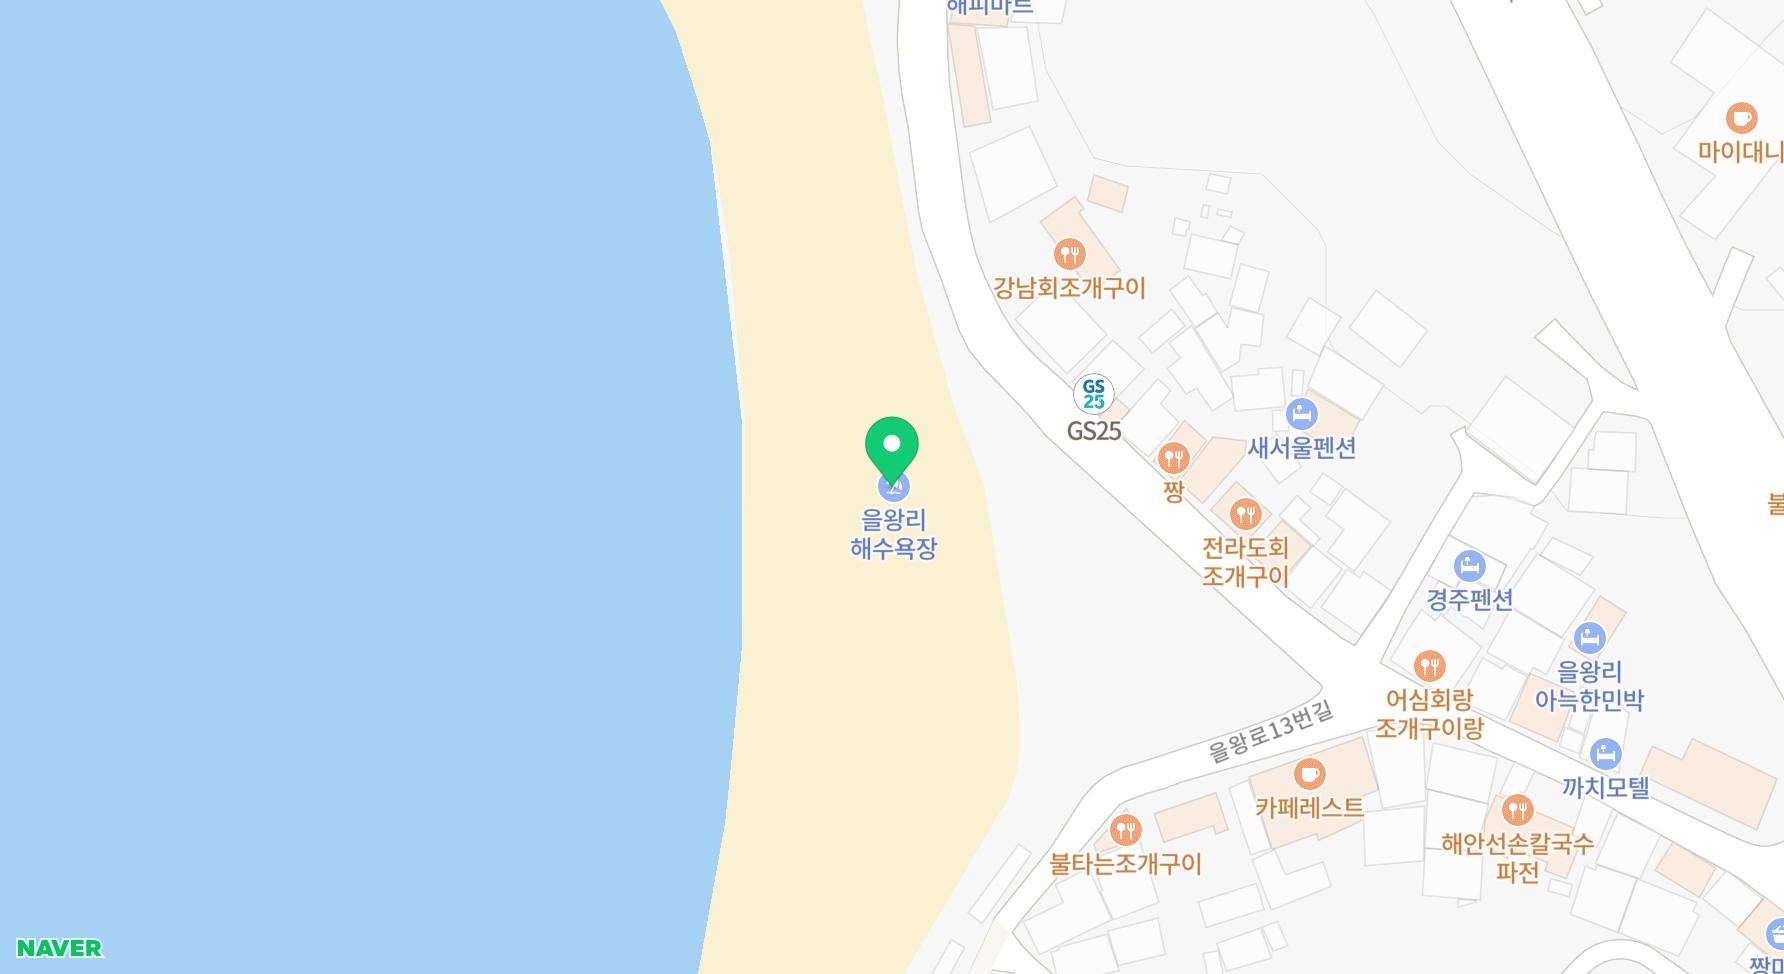 인천 을왕리 해수욕장 영종도 놀거리 서해 일몰 명소